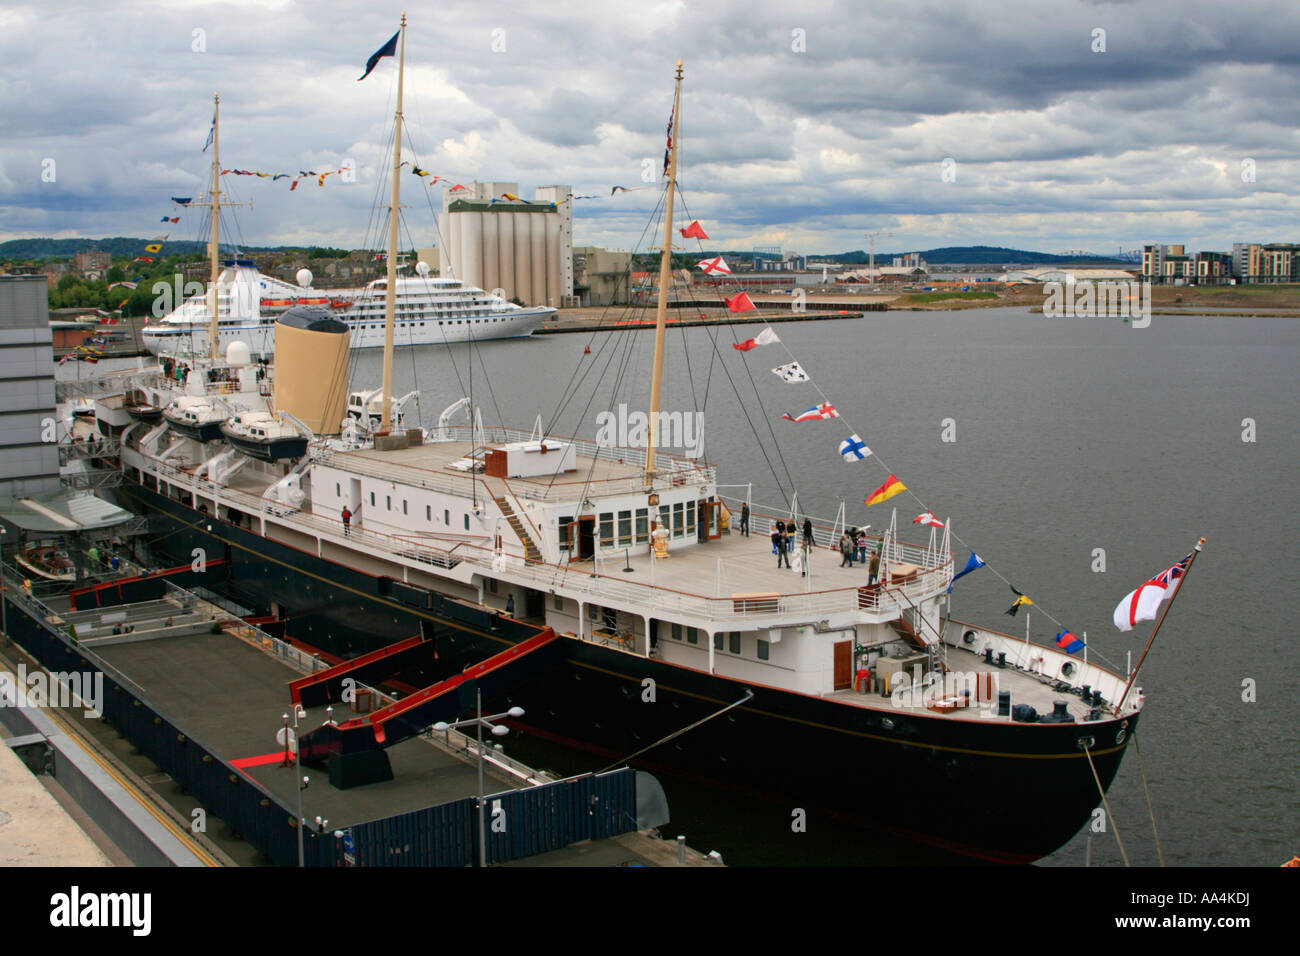 Ihrer Majestät Yacht HMY Britannia Ausstellung Schiff am Ocean Terminal, Leith, Edinburgh, Schottland. Stockfoto